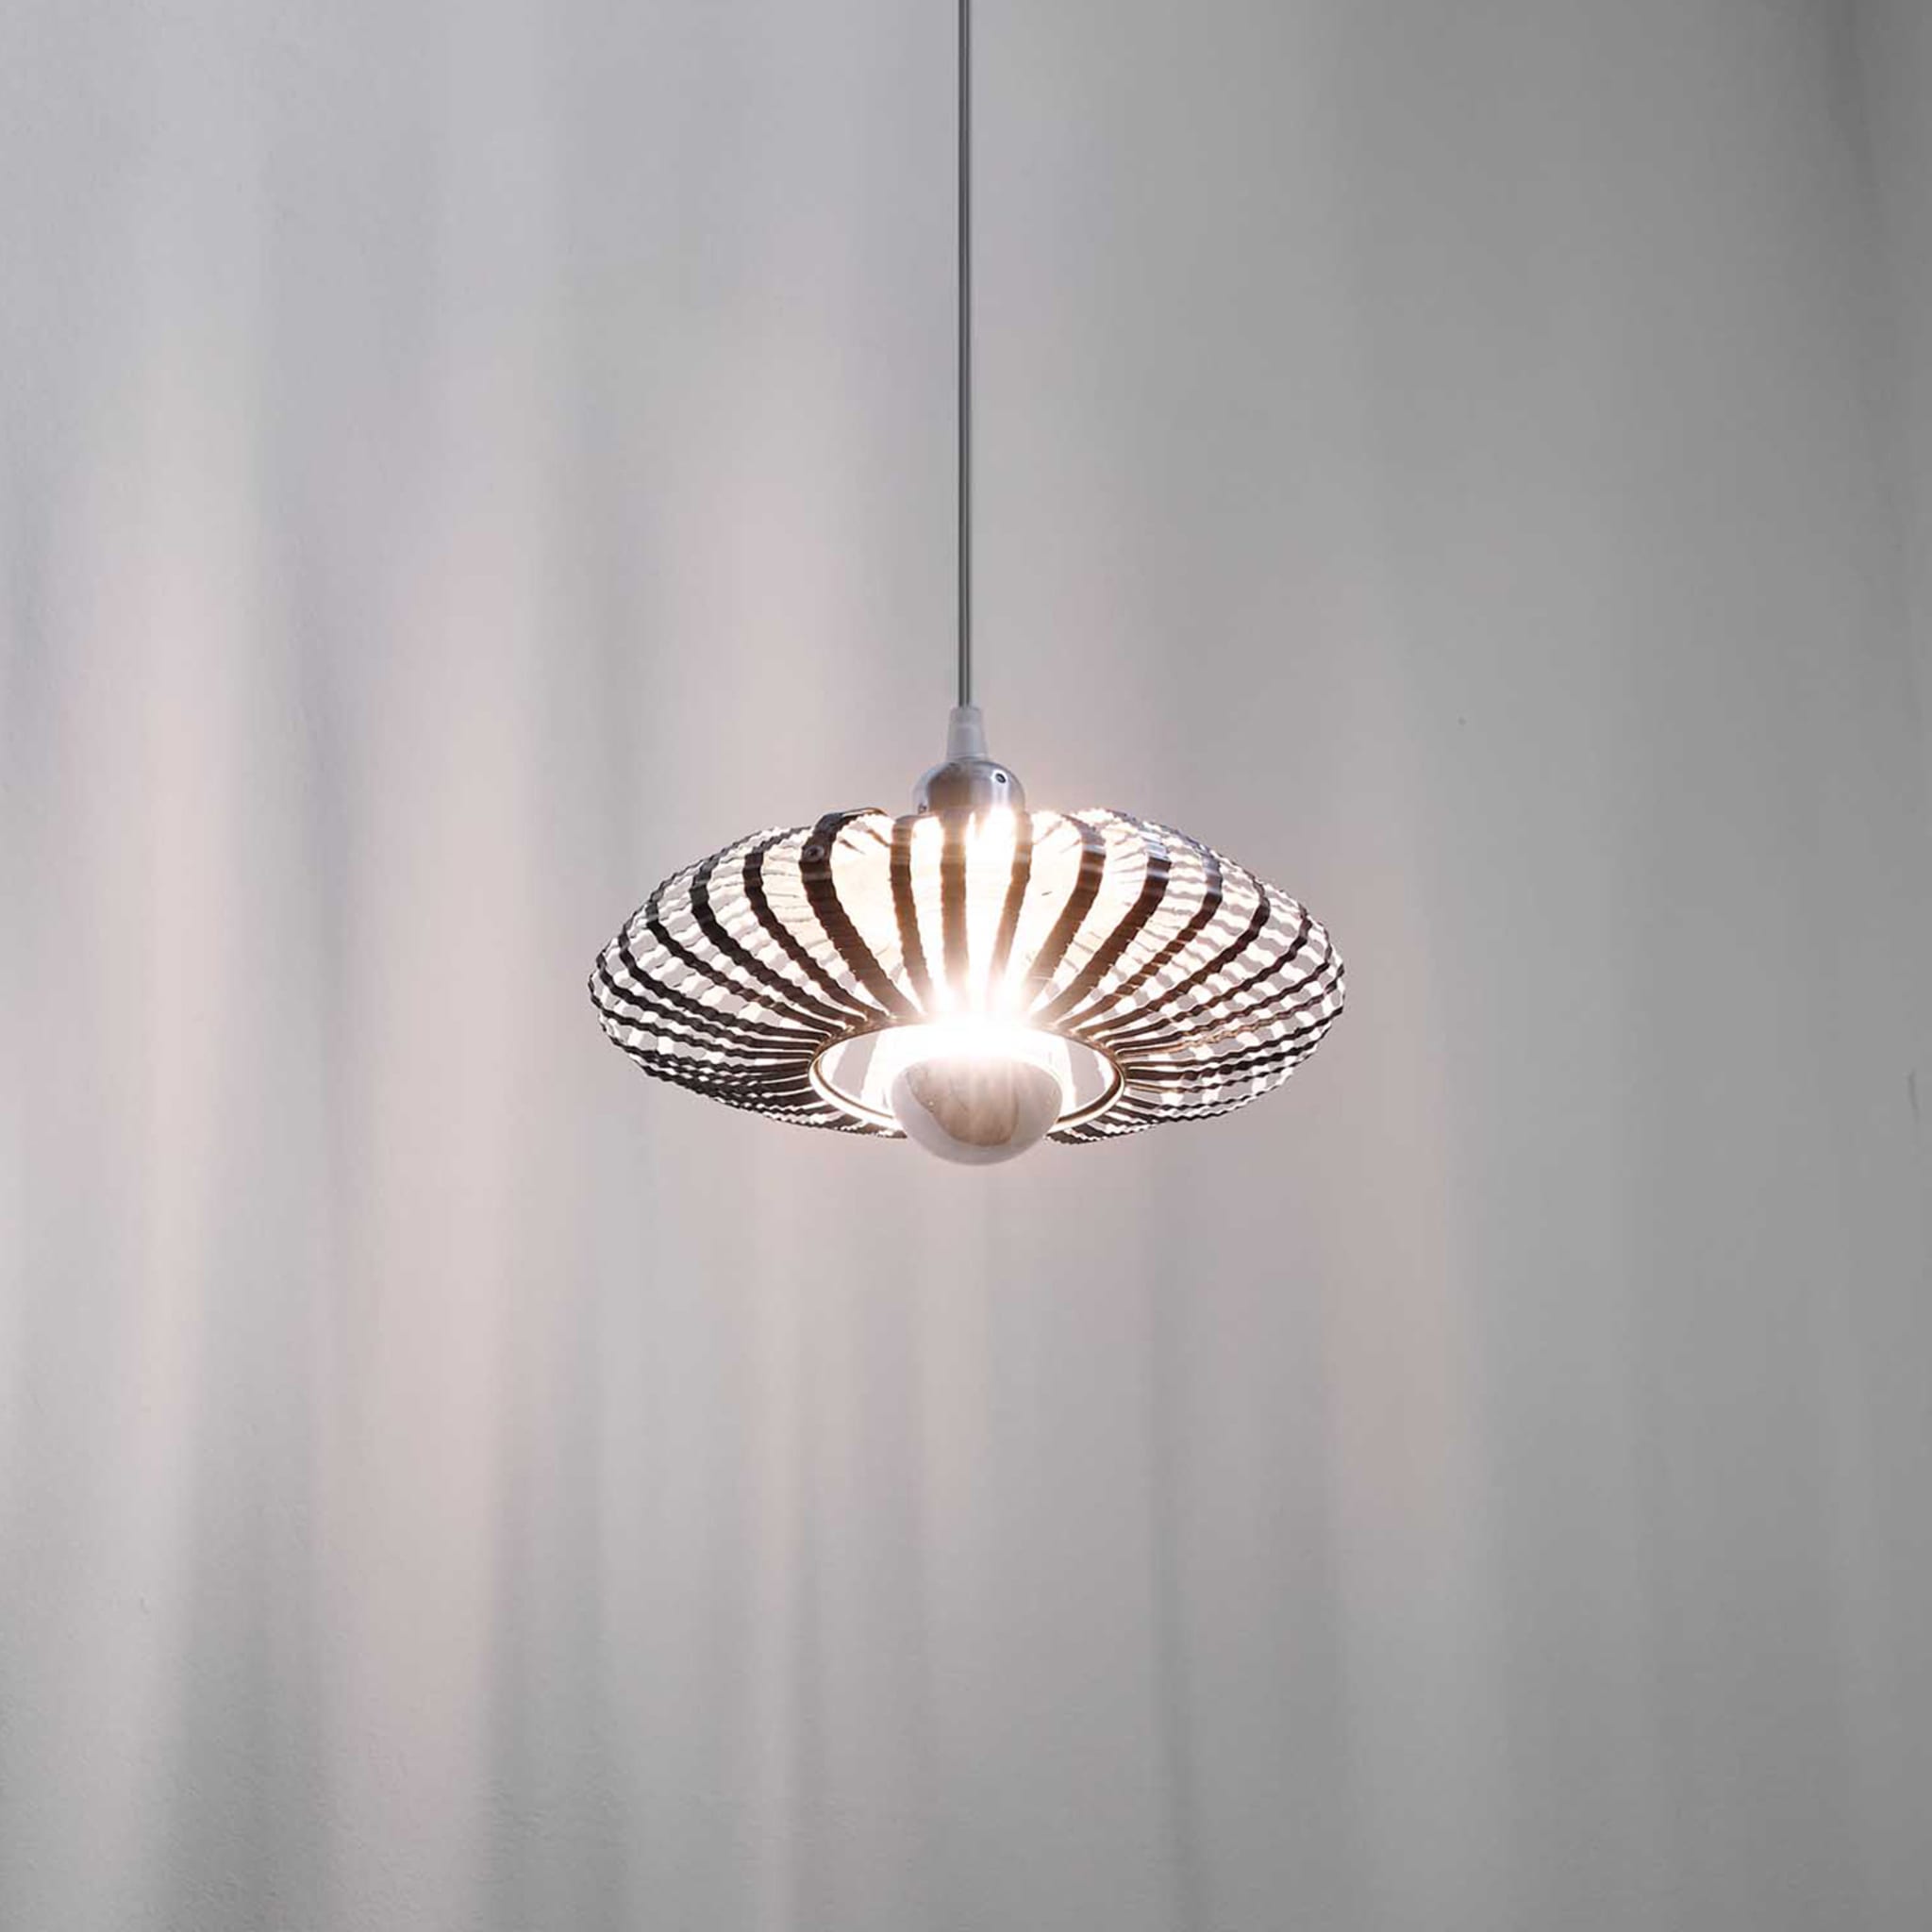 Celeste Pendant Lamp by Nadja Galli Zugaro - Alternative view 4